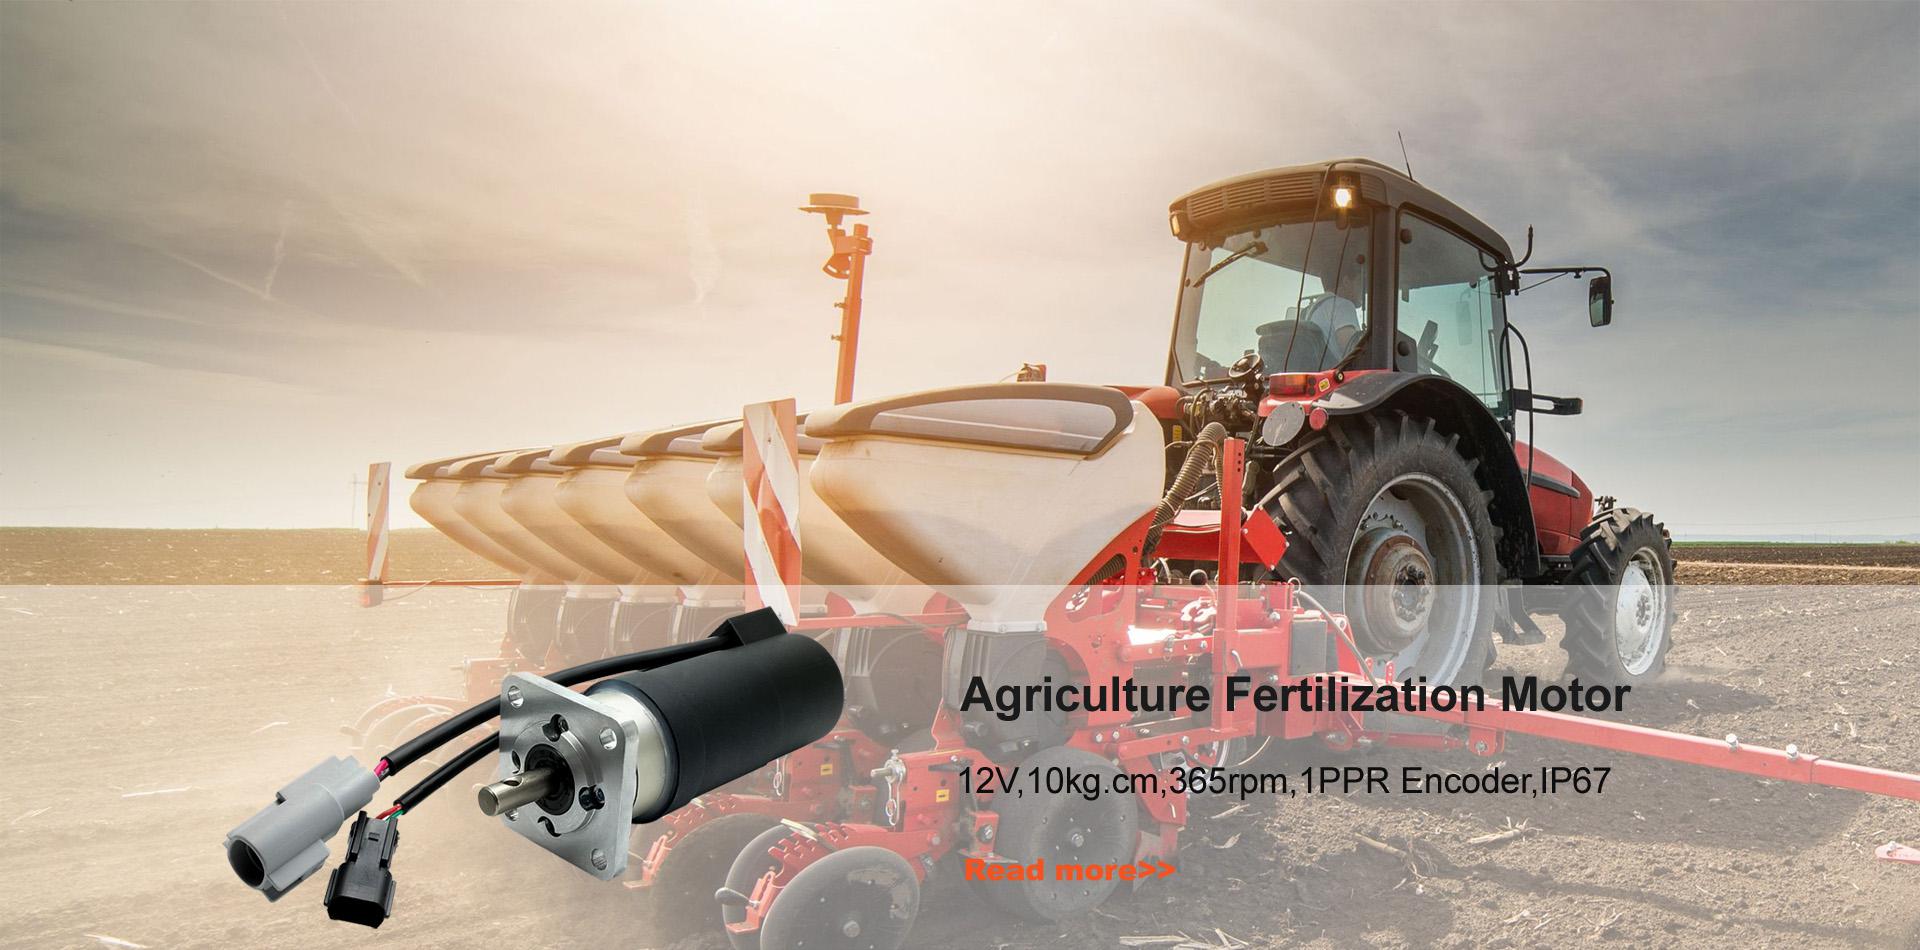 Motor de fertilización agrícola